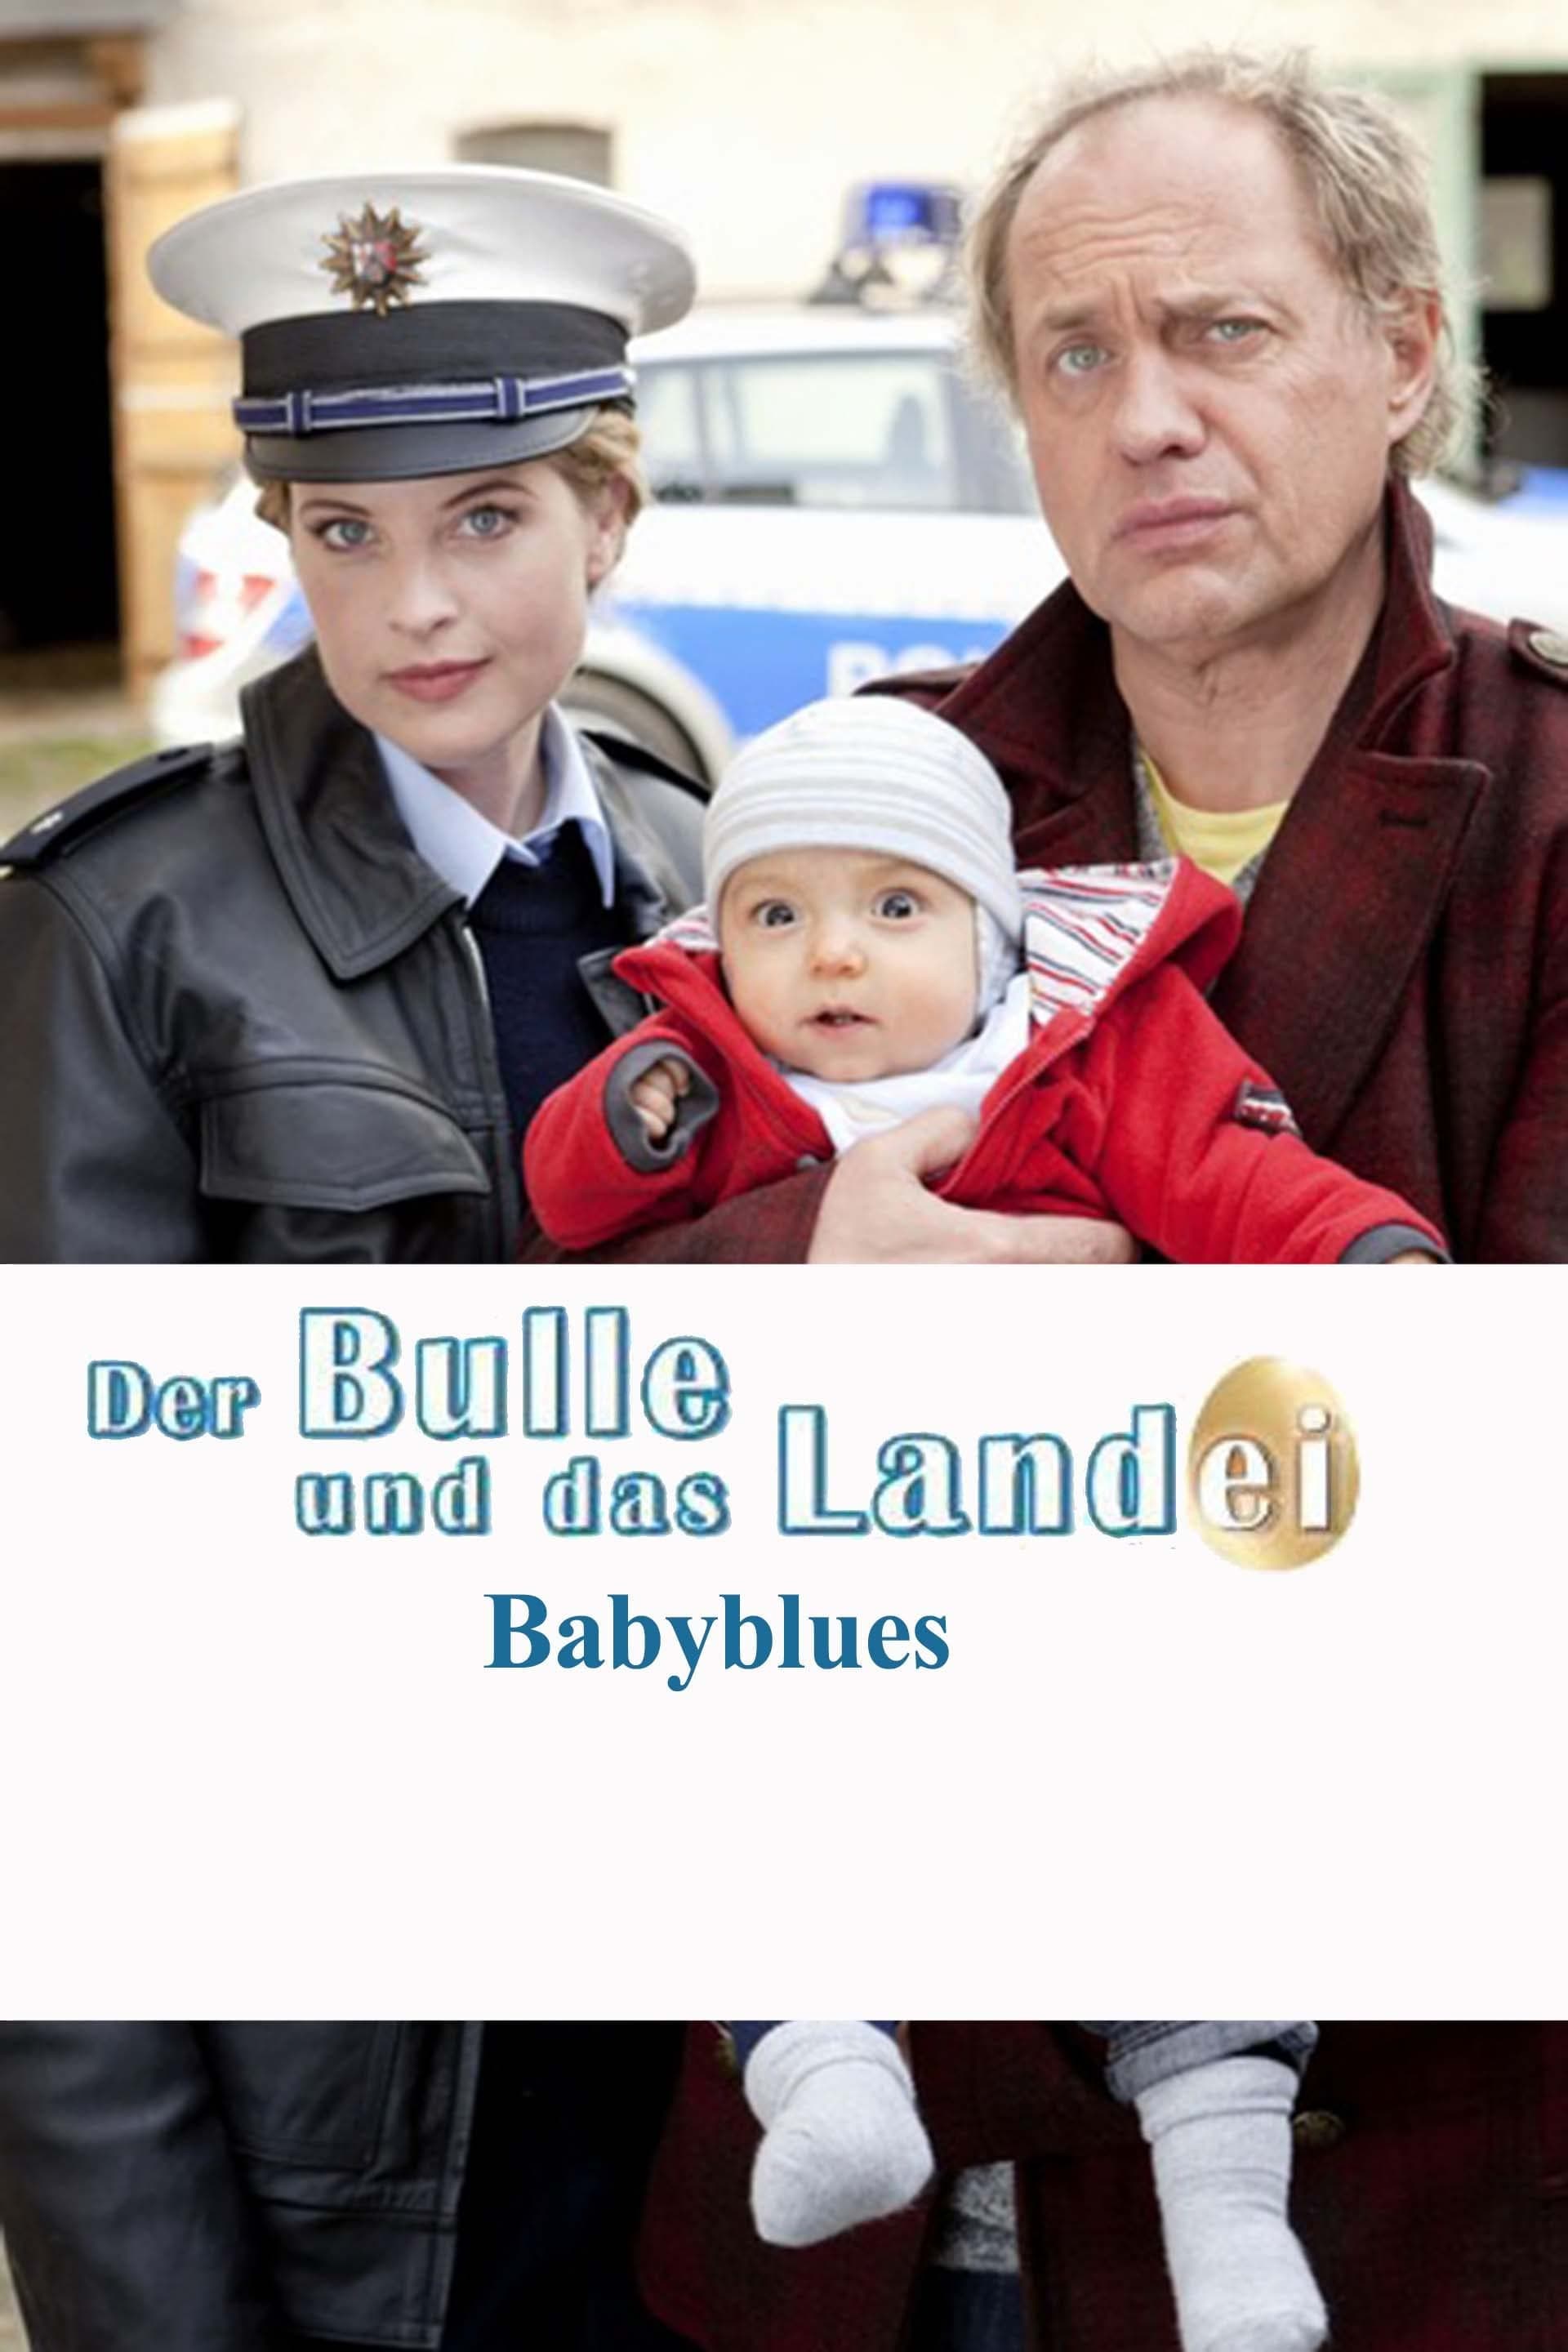 Der Bulle und das Landei - Babyblues (2011)